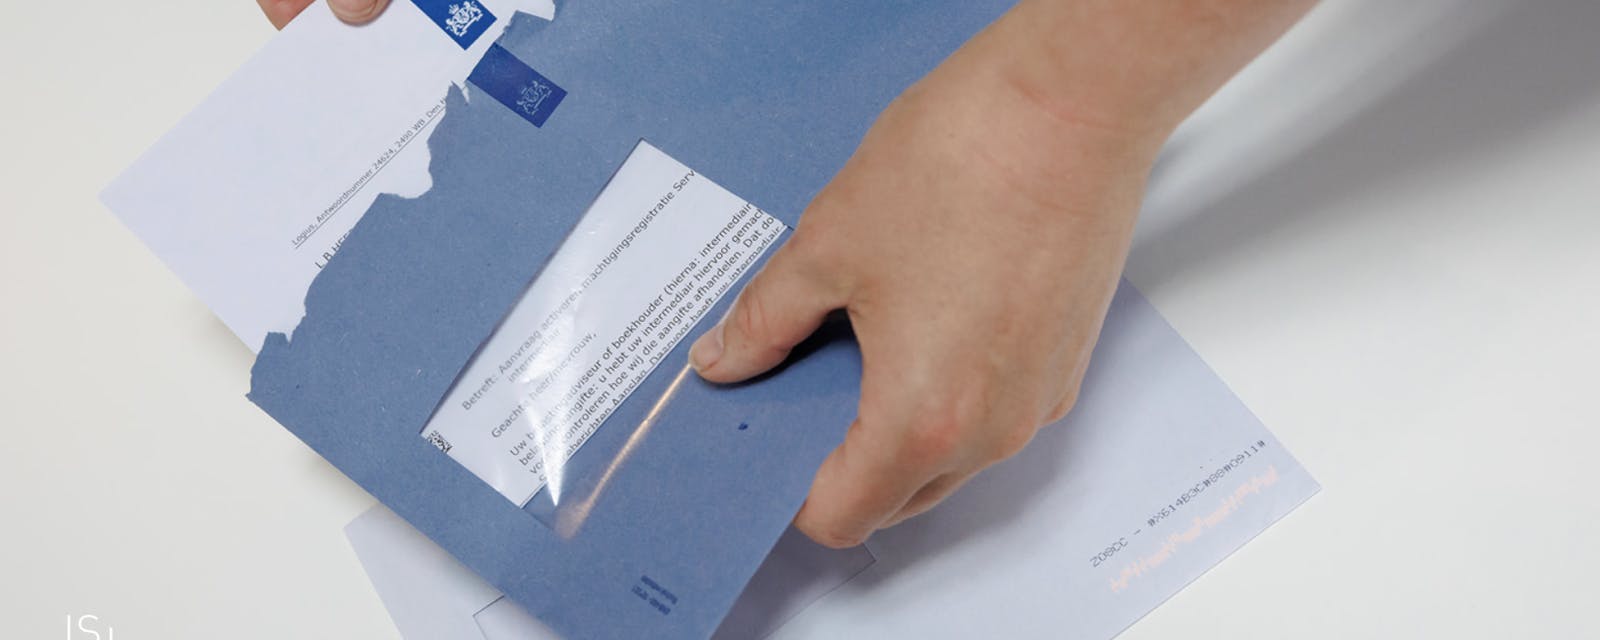 Blauwe envelop van de Belastingdienst